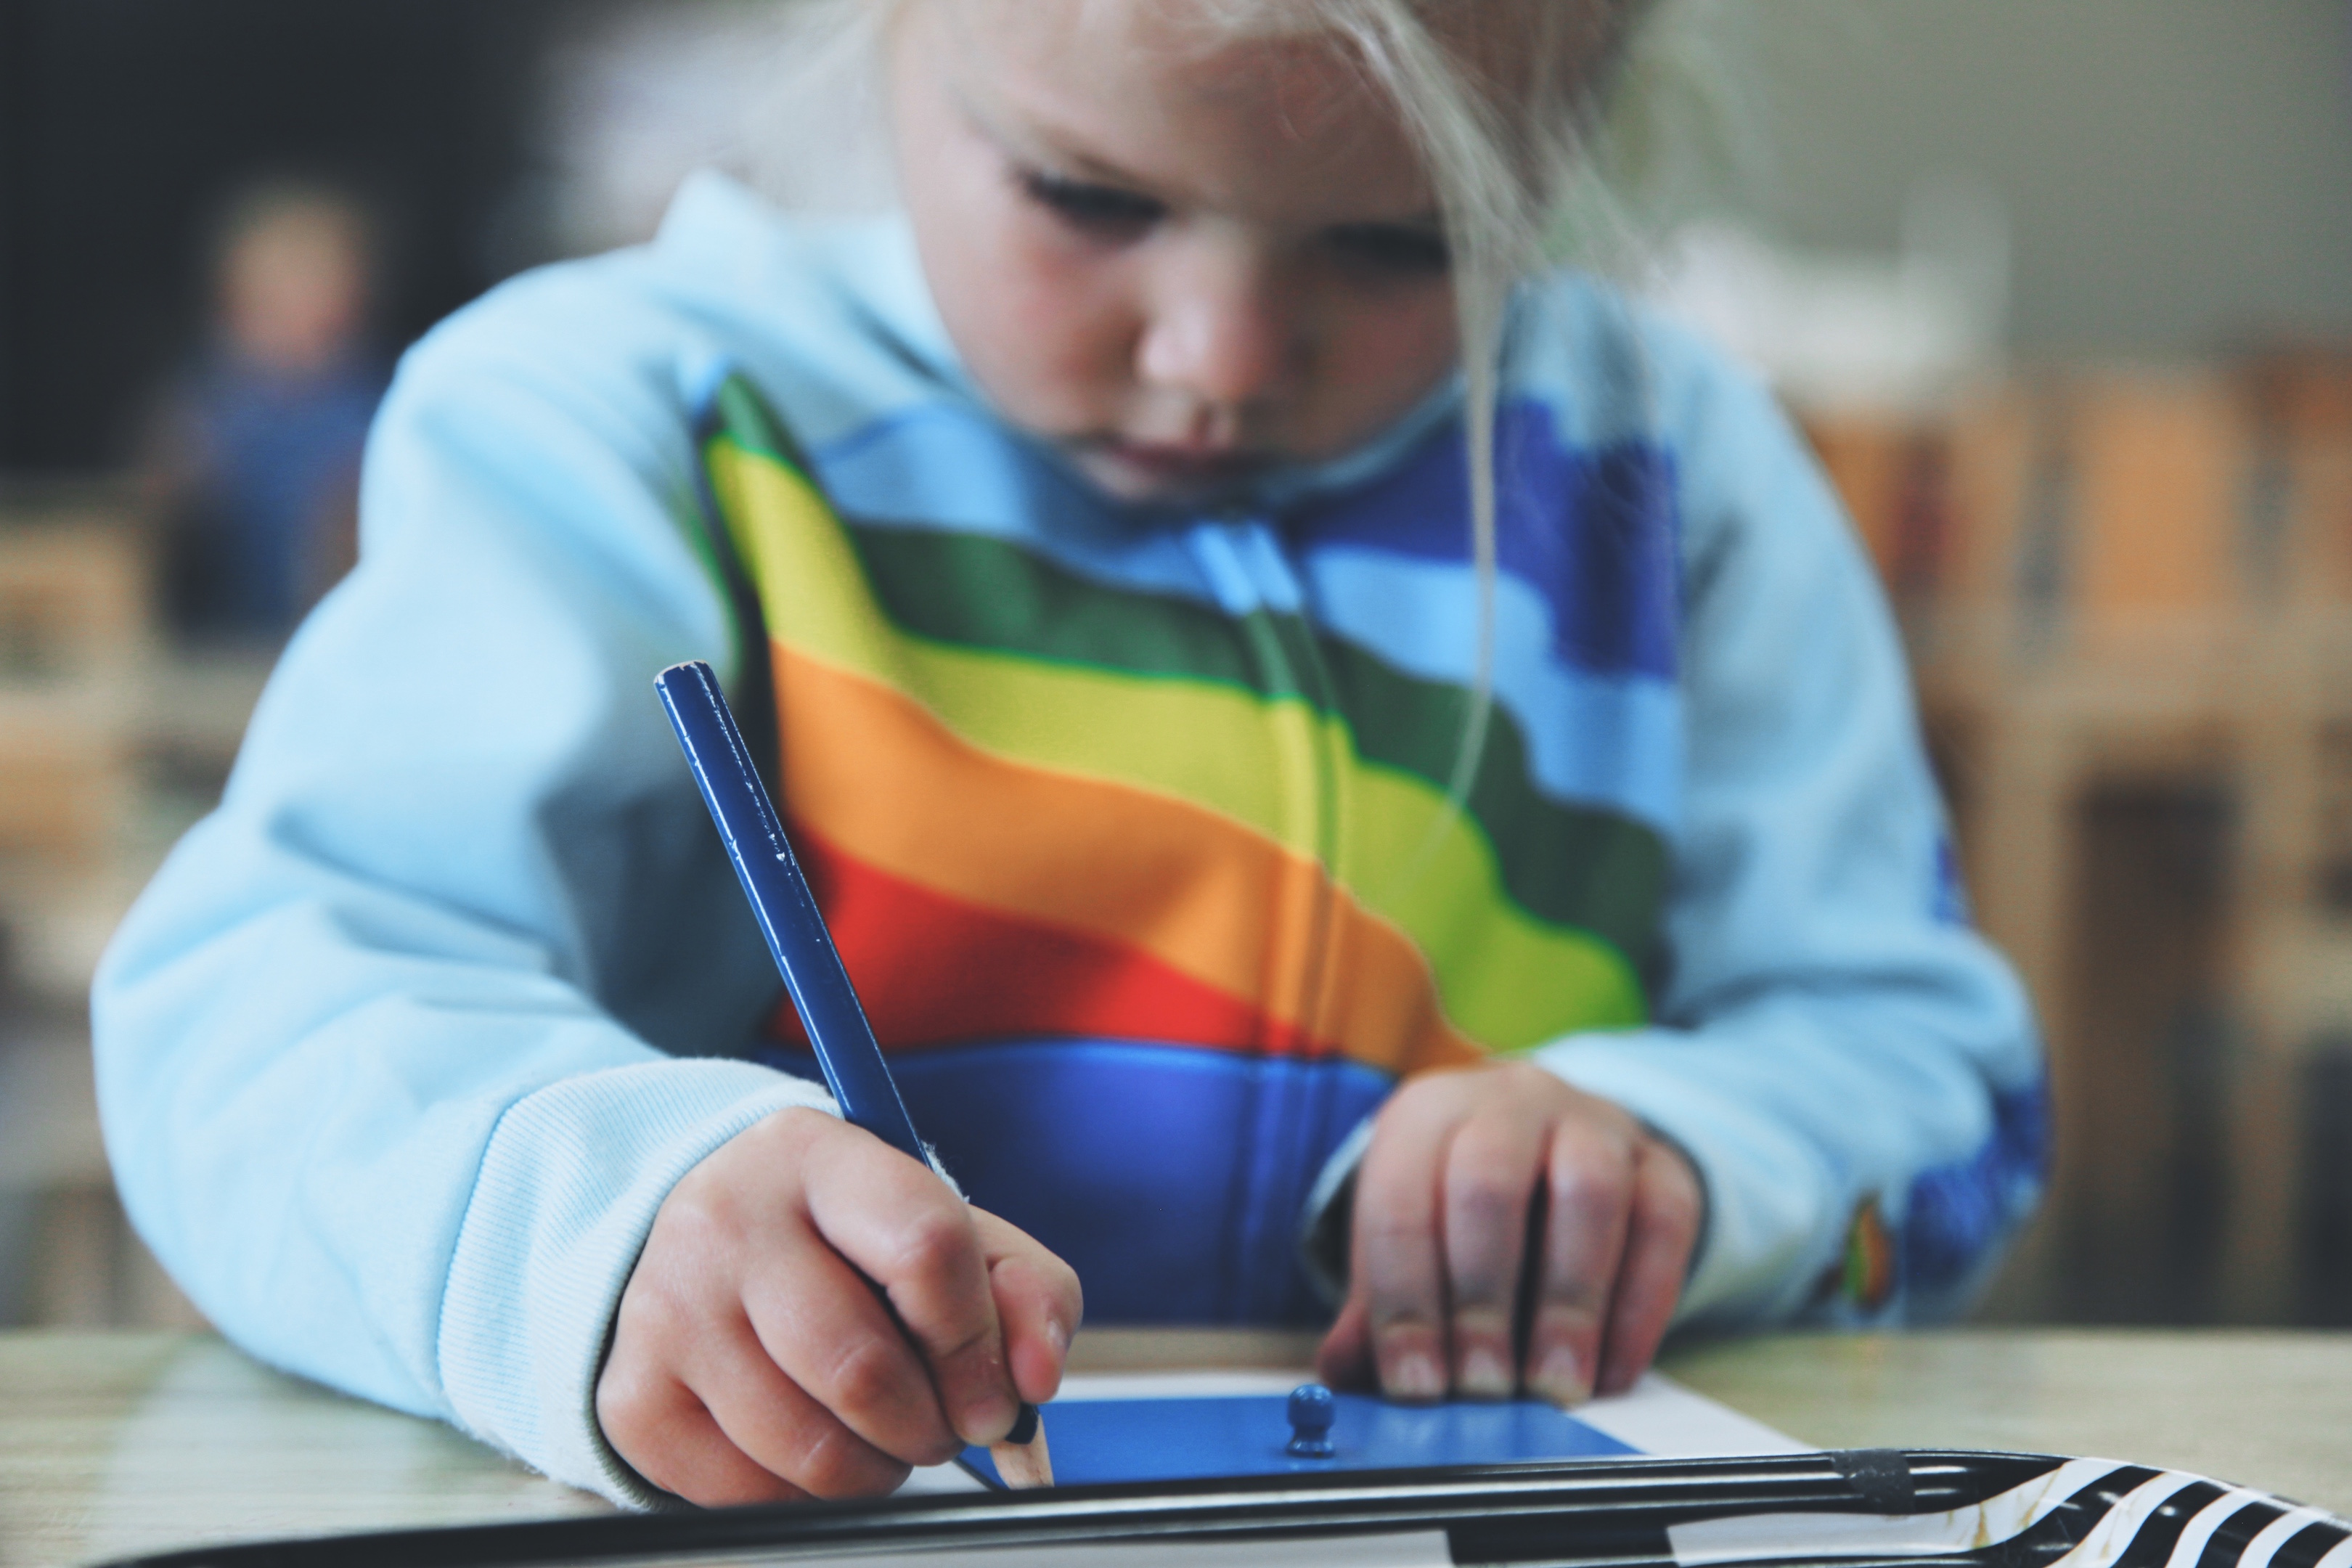 Bacs sensoriels Montessori, qu'est-ce que c'est ? - Le bazar d'Alison -  Blog Lifestyle, Zéro Déchet et Kids